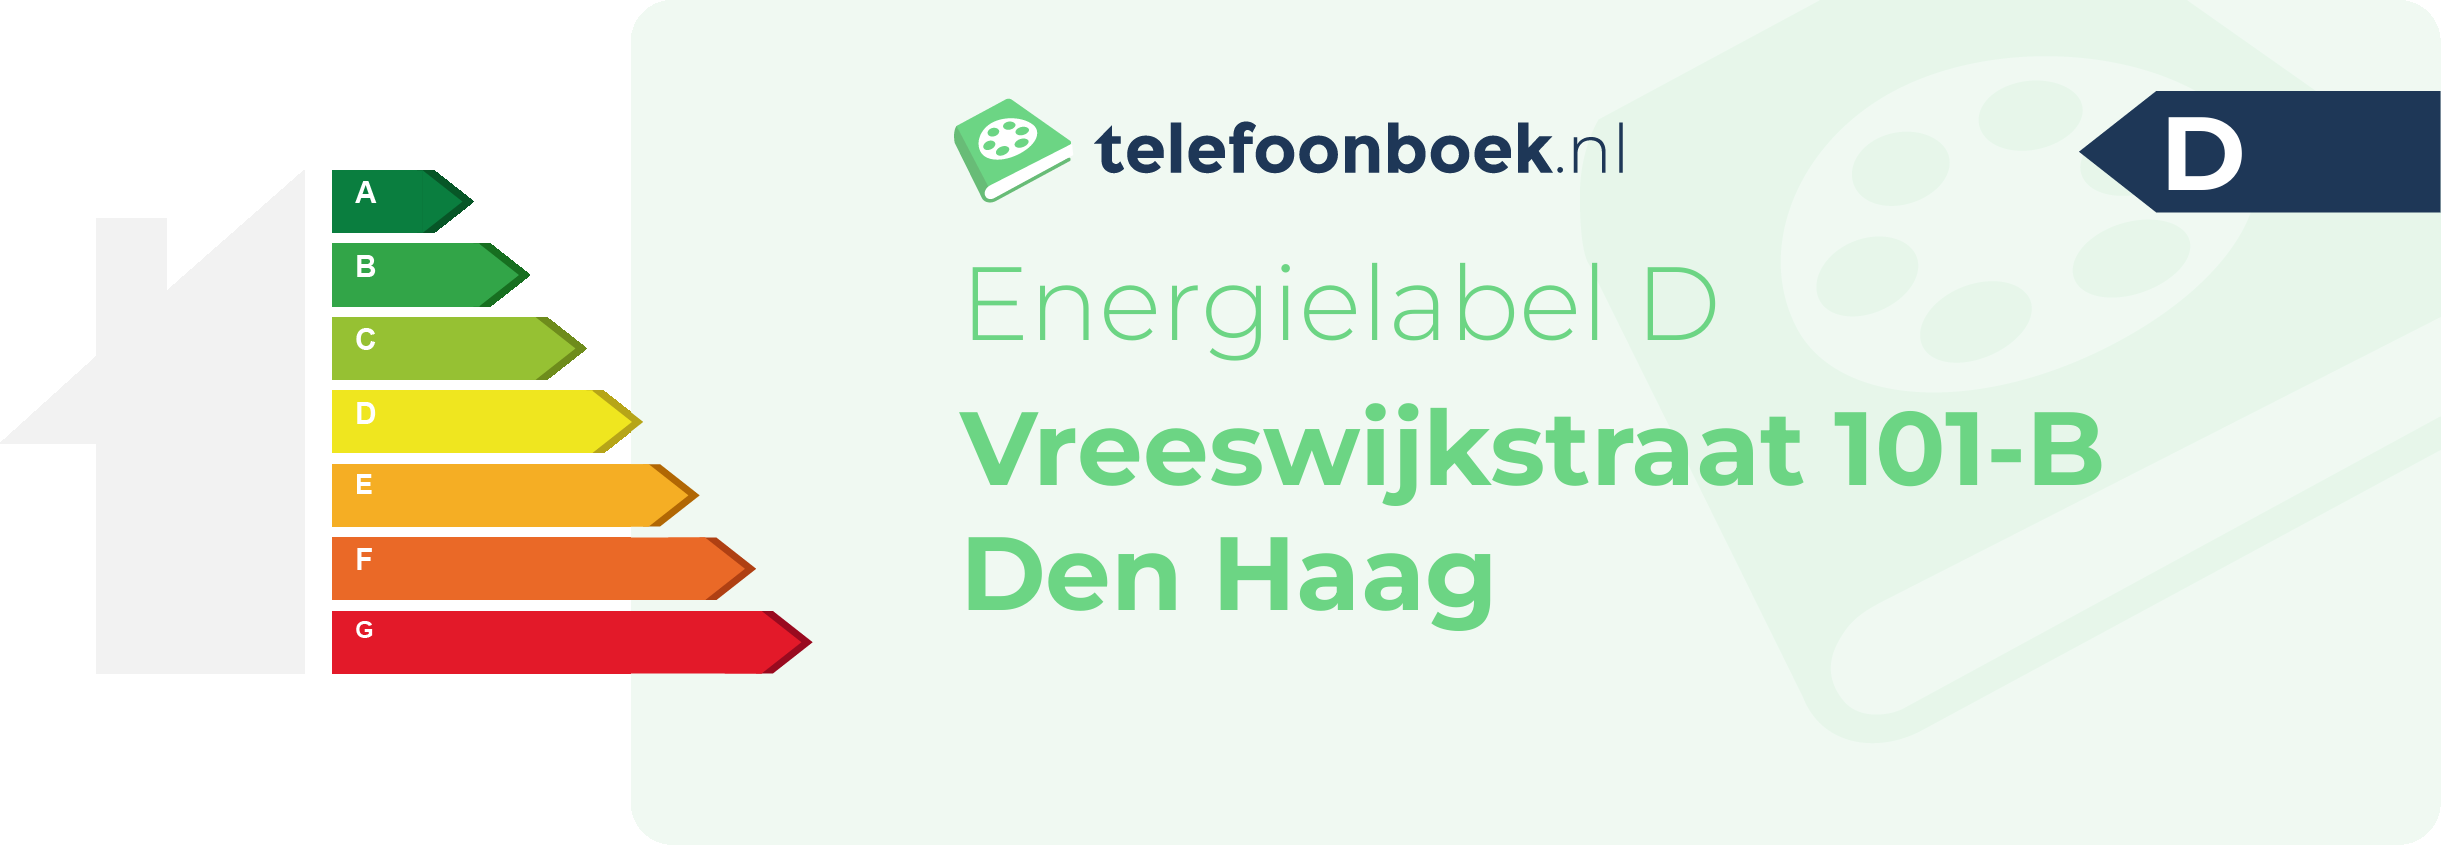 Energielabel Vreeswijkstraat 101-B Den Haag